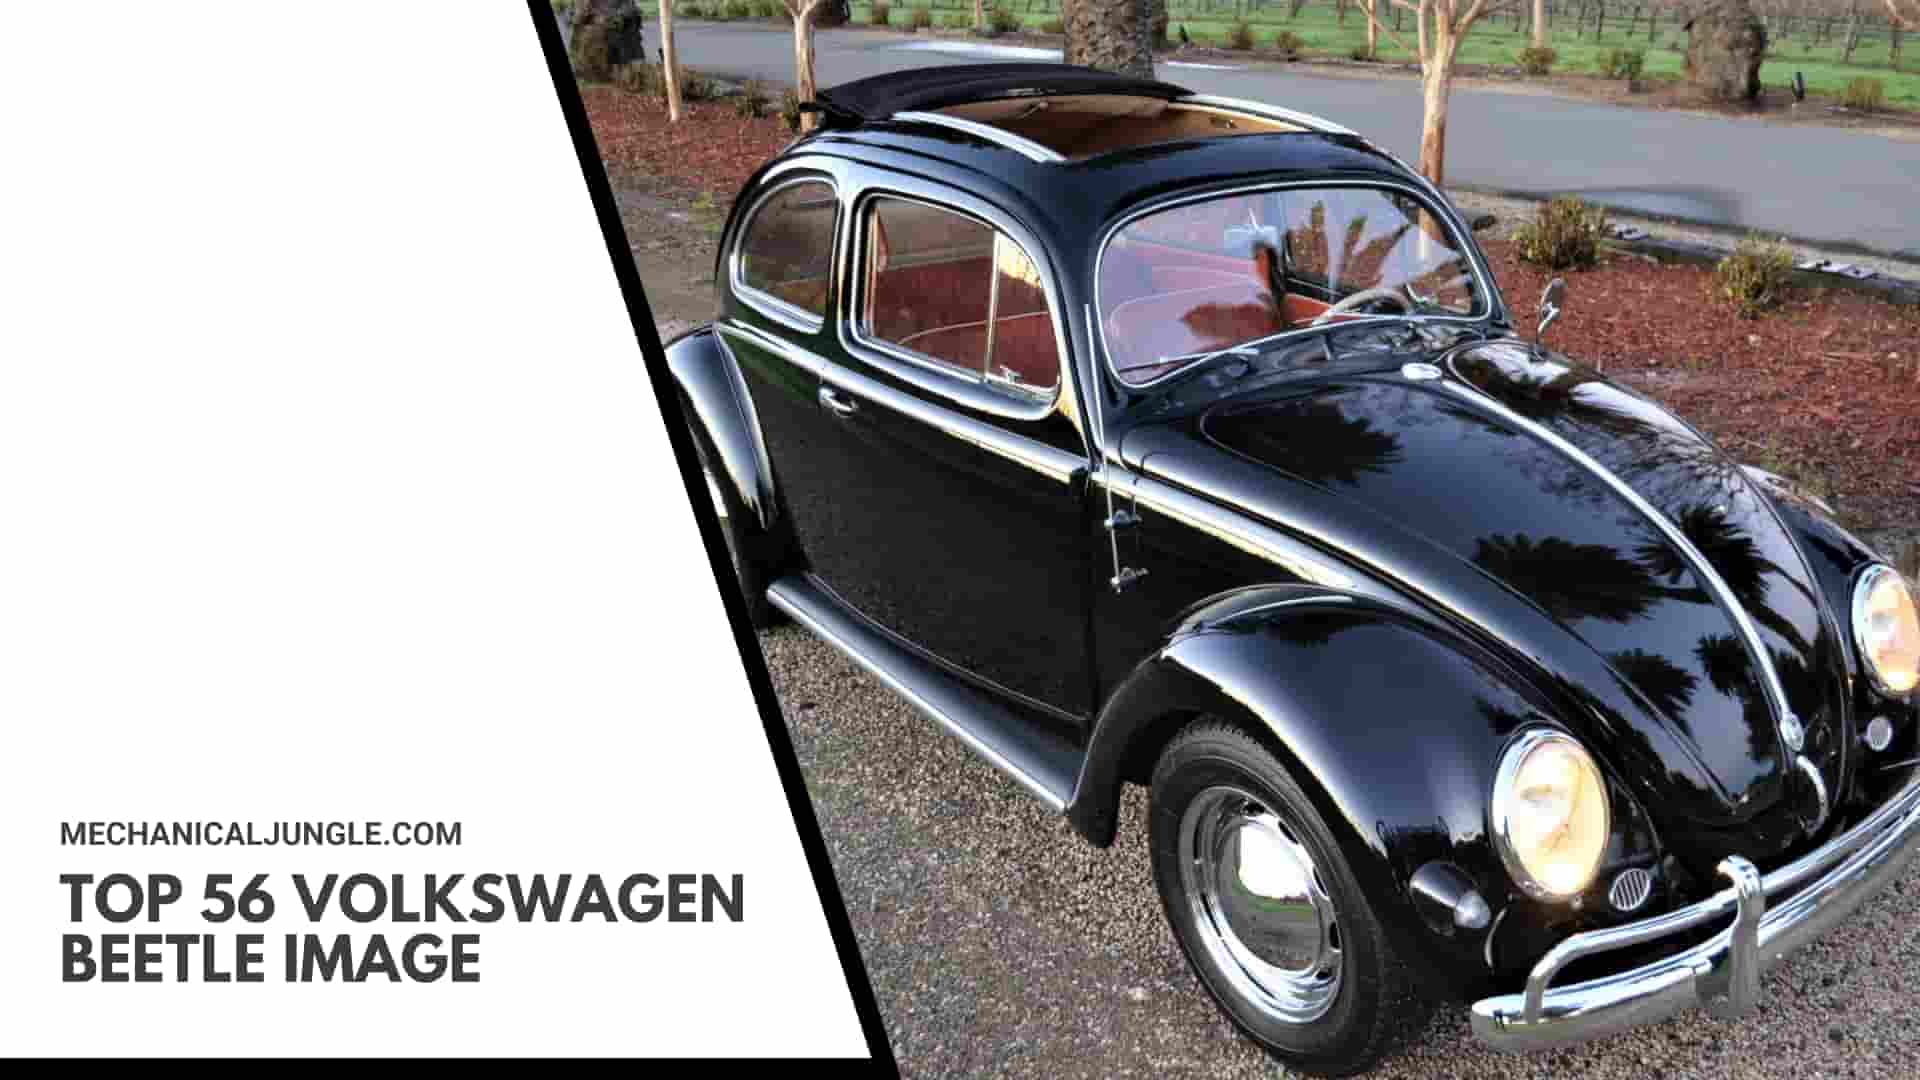 Top 56 Volkswagen Beetle Image